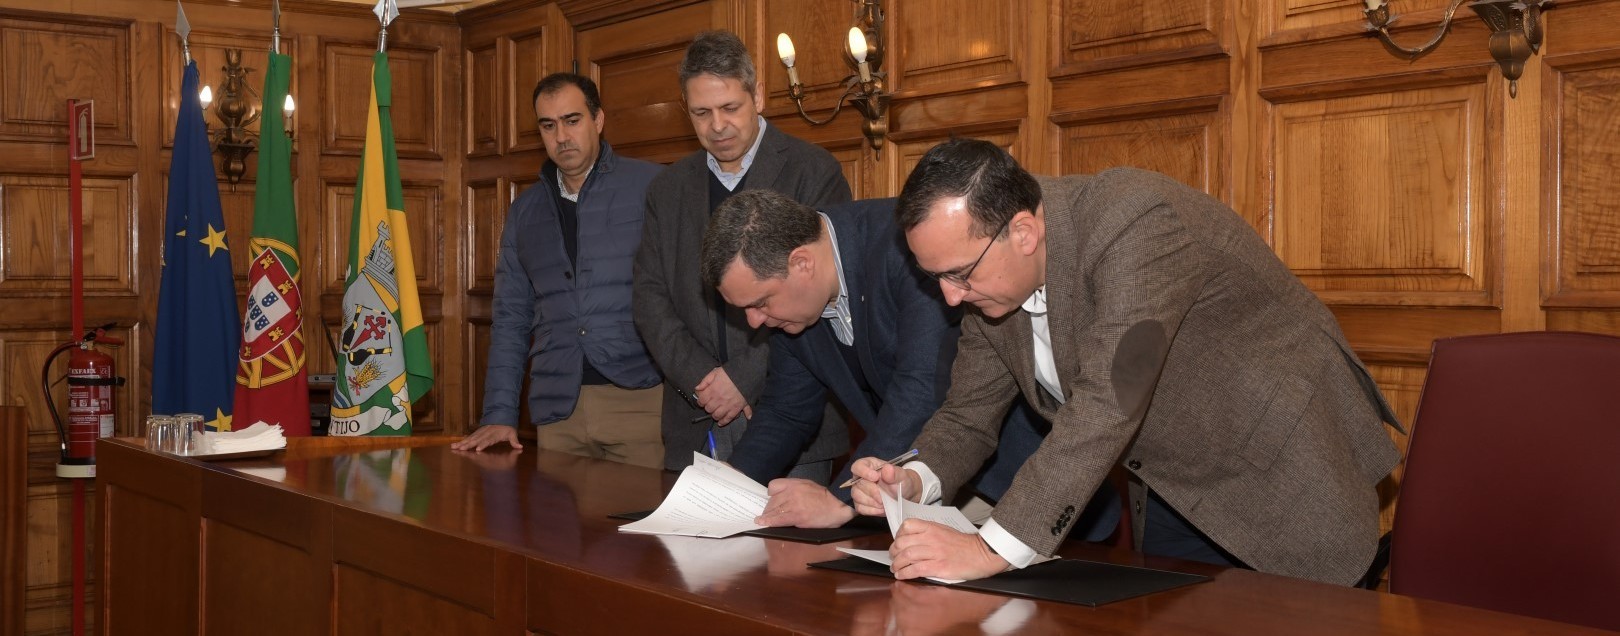 Assinado contrato de urbanização relativo à Clínica CUF no Montijo